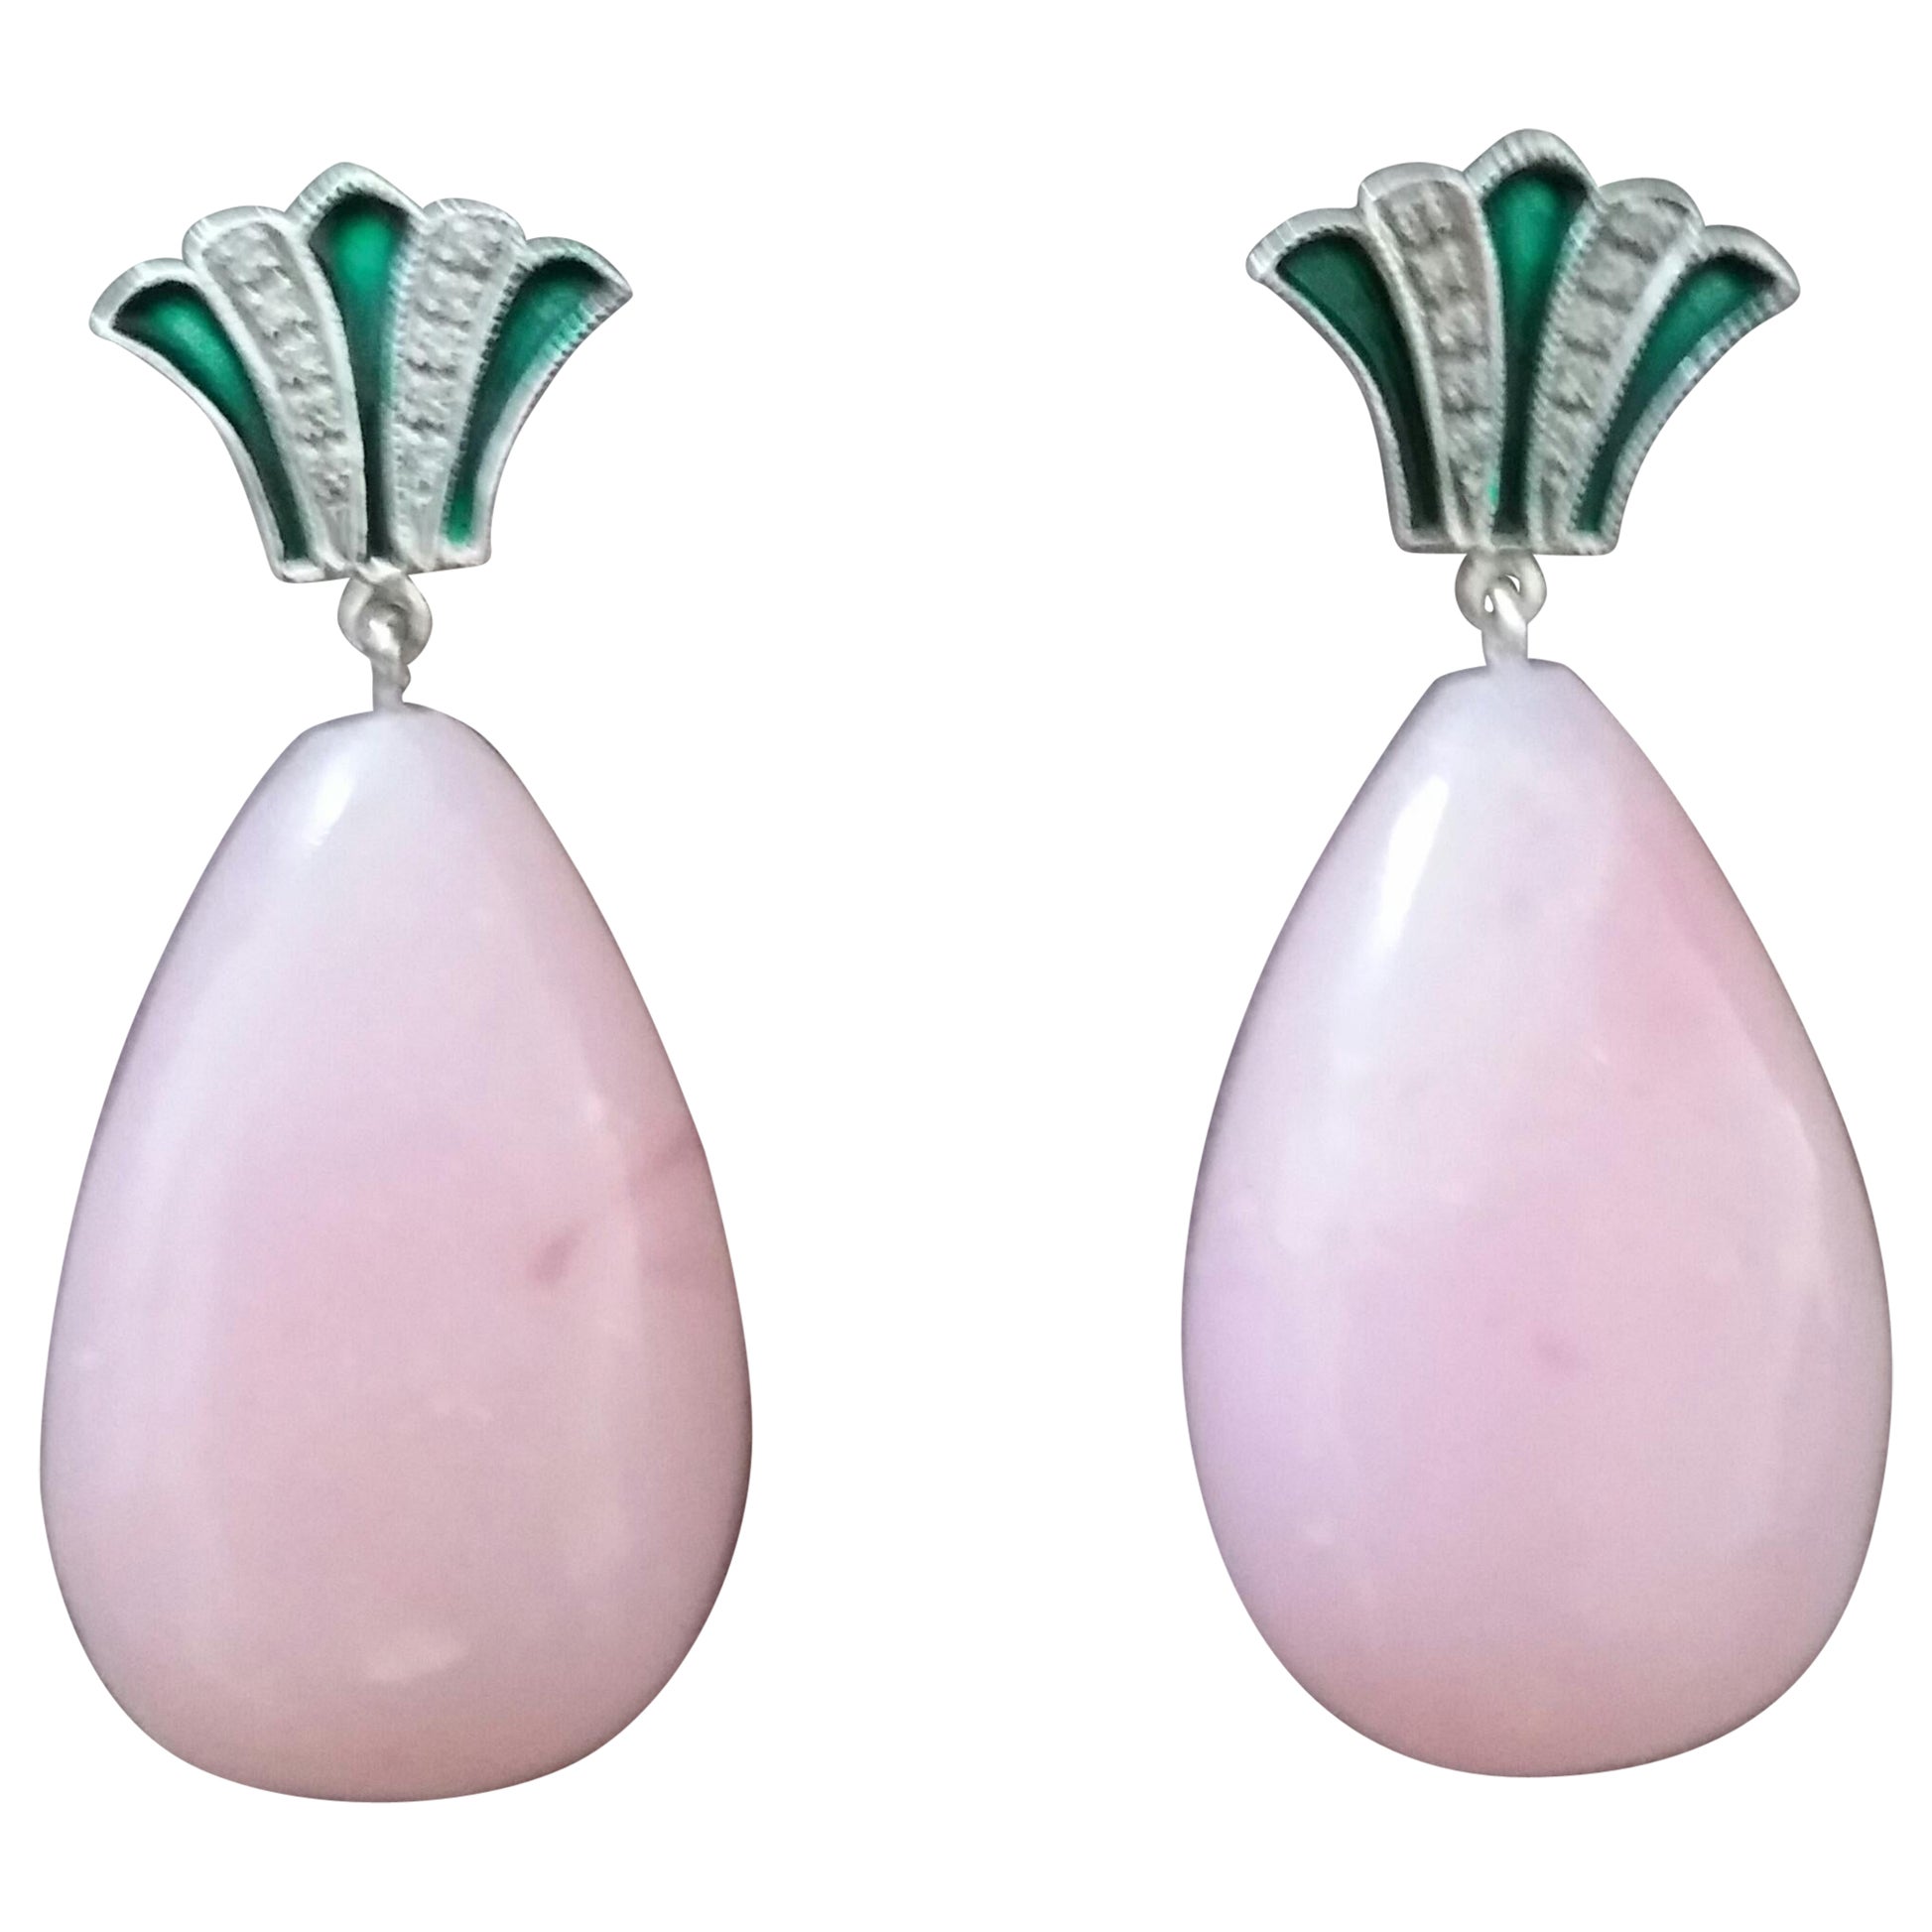 Pendants d'oreilles en or de style Art déco avec opales roses, diamants et émail vert